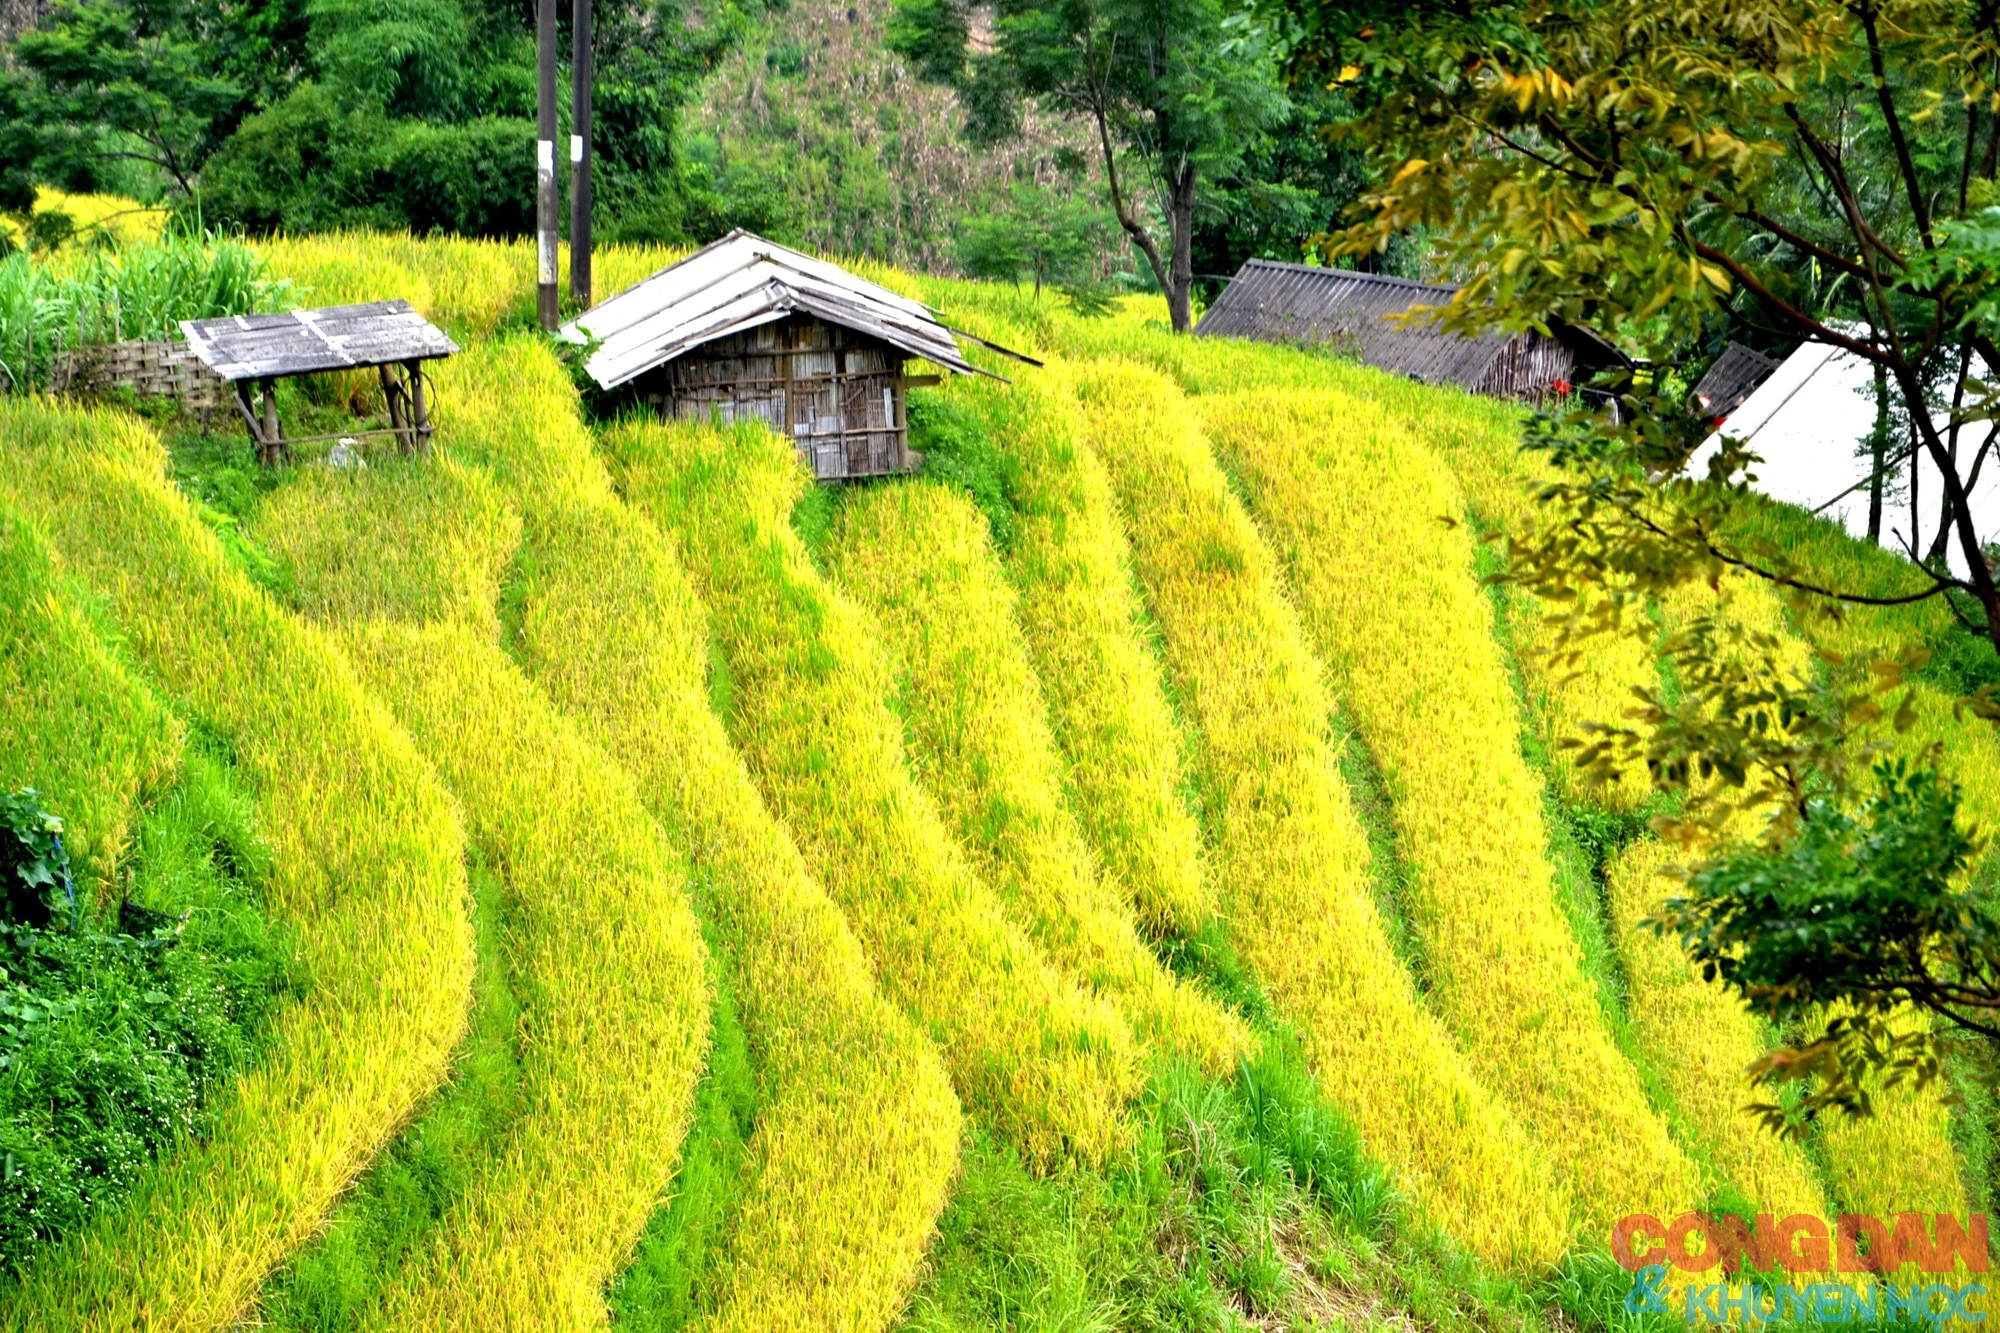 Mùa vàng đẹp mê trên núi cao Bát Xát, Lào Cai ảnh 9